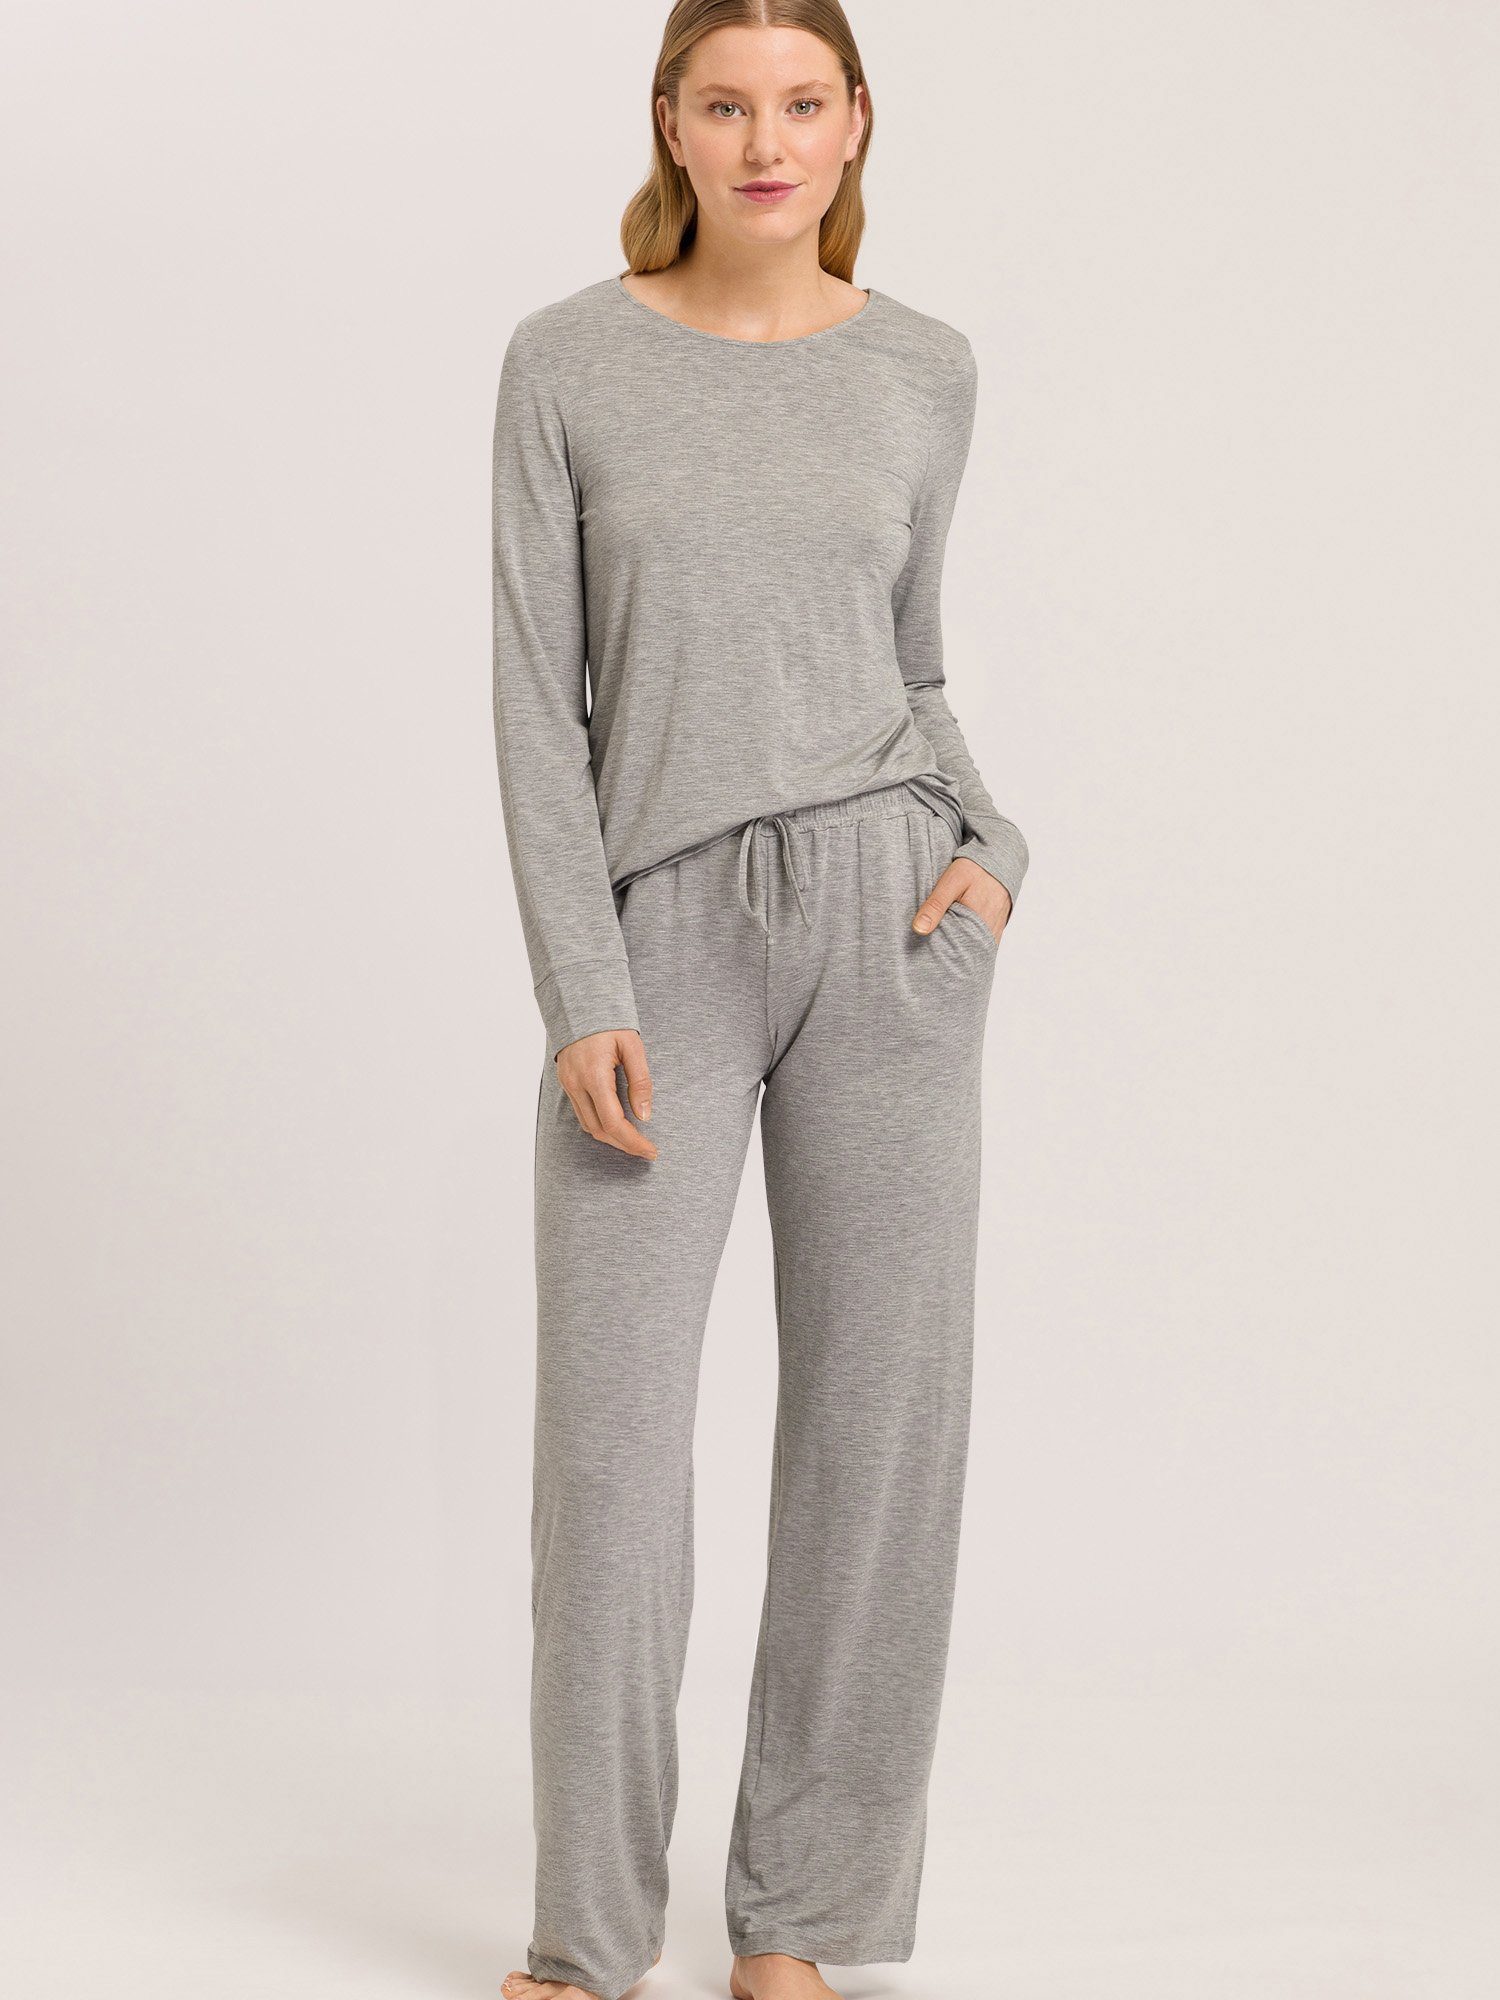 Natural Hanro Elegance melange Pyjamahose schlaf-hose pyjama schlafmode grey